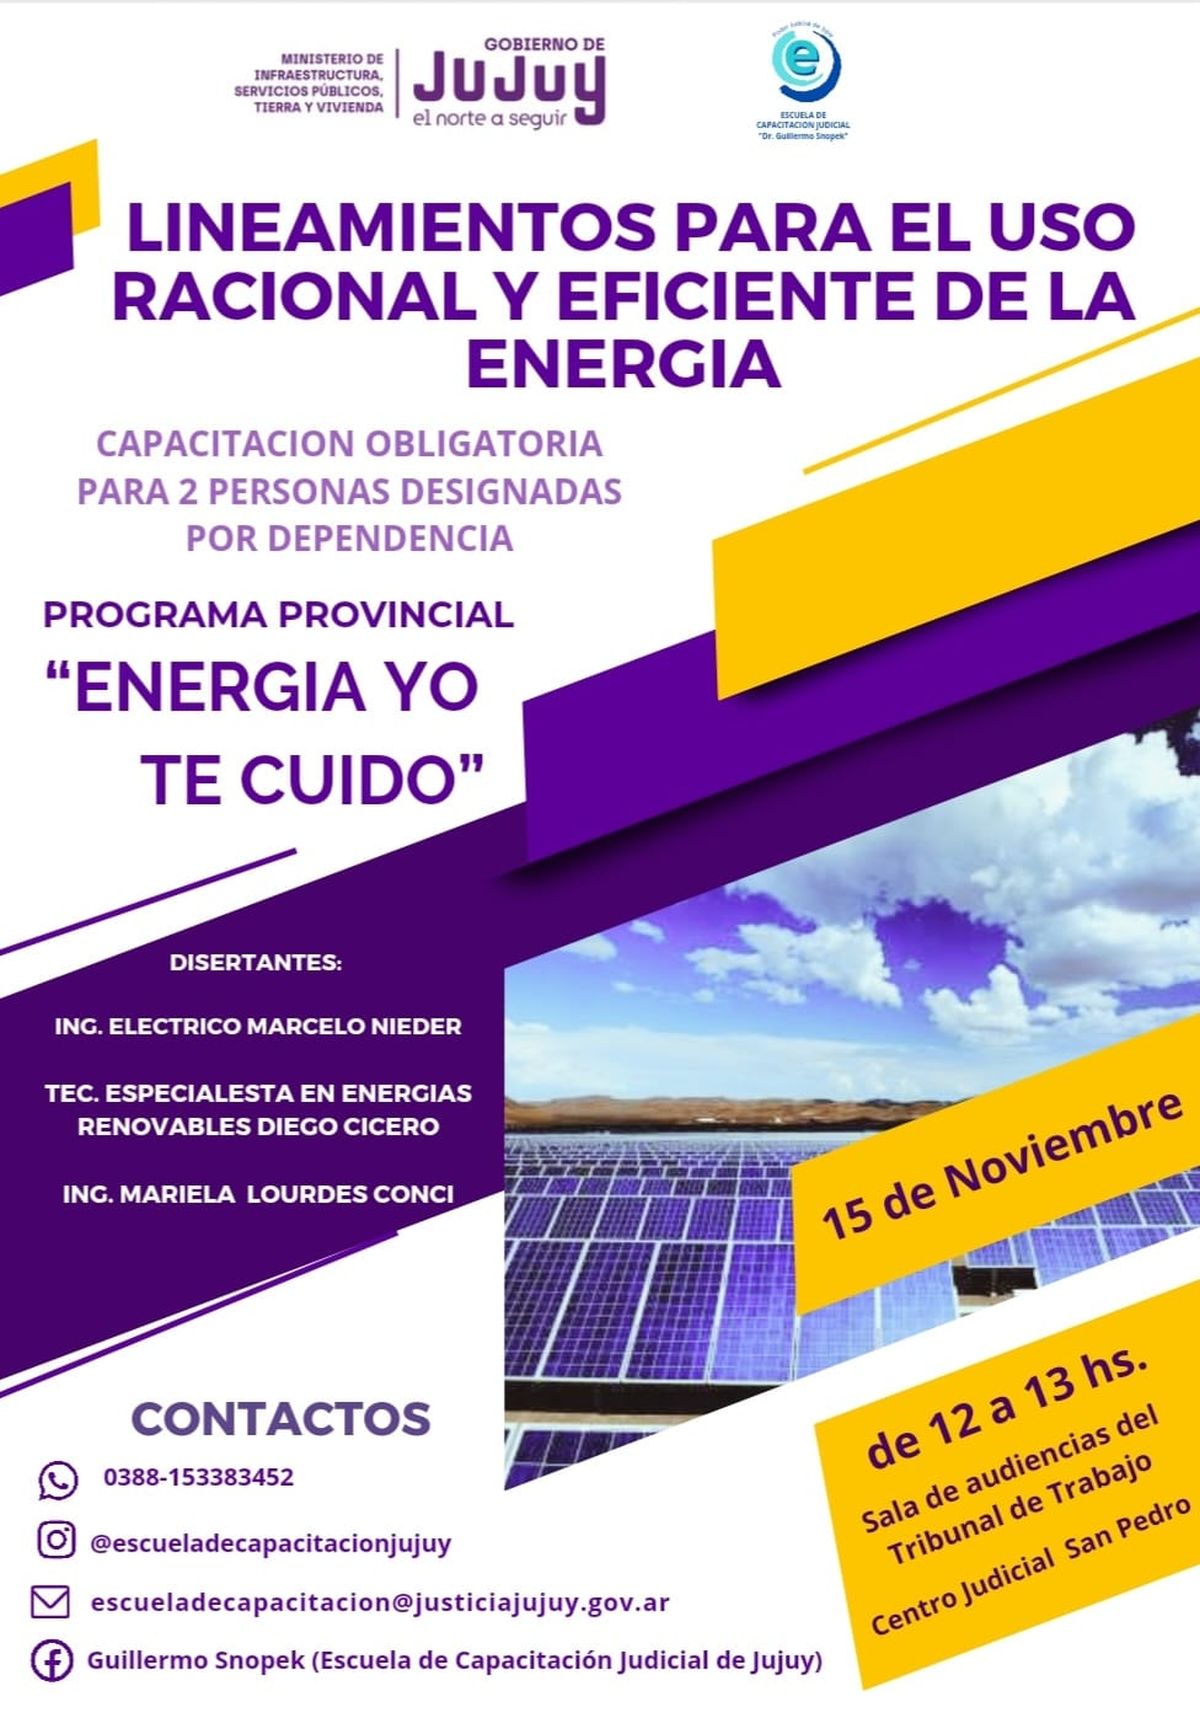 Eficiencia energética para el Centro Judicial de San Pedro